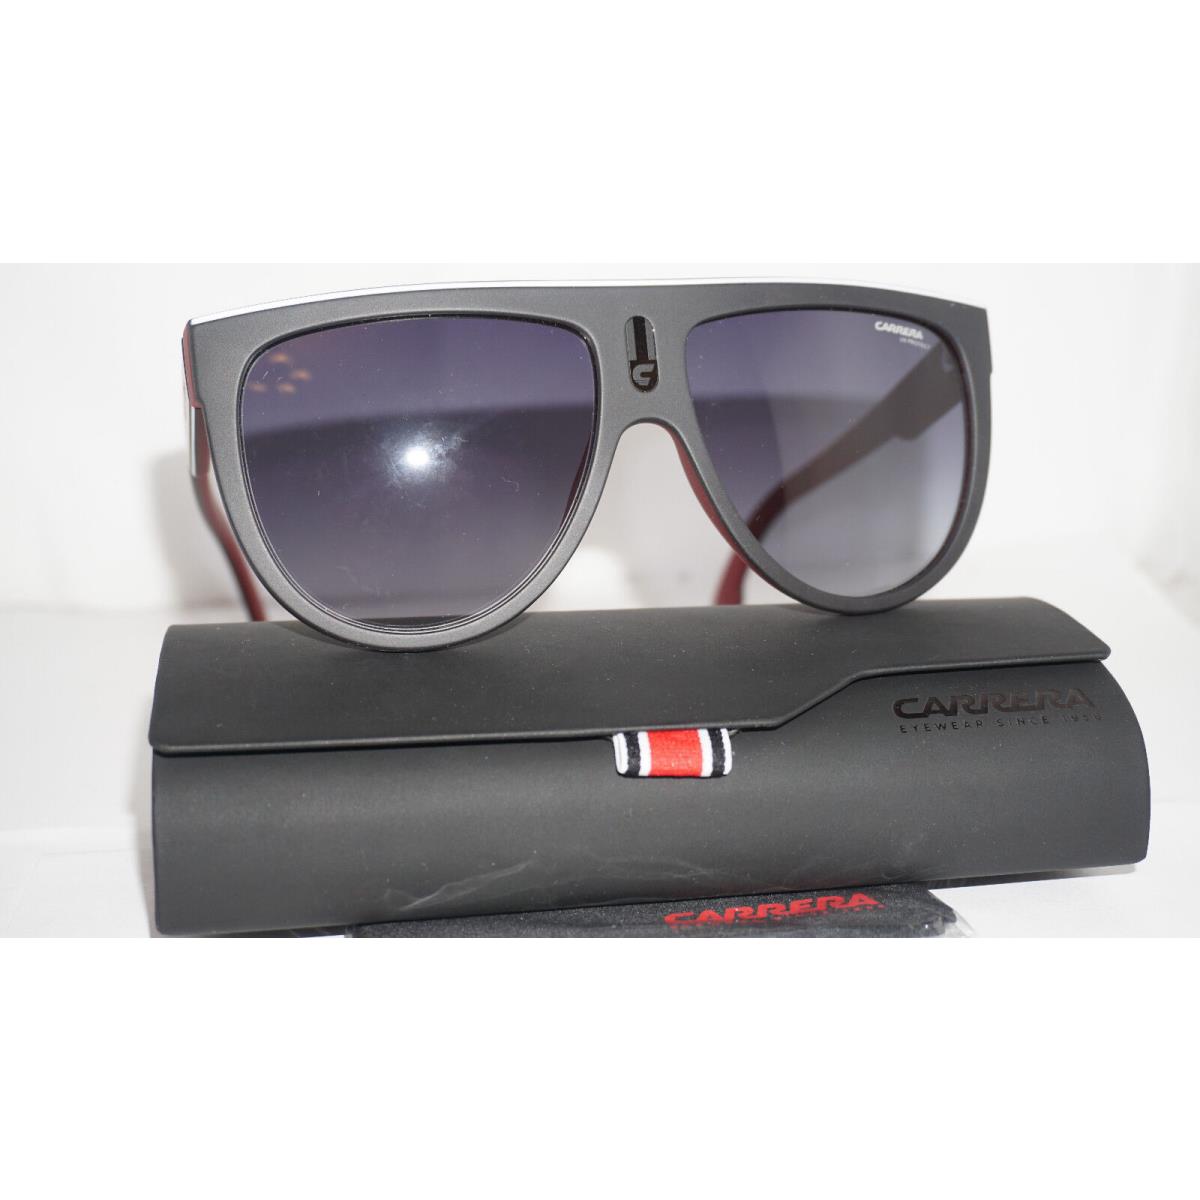 Carrera Sunglasses Matte Black Red Grey Gradient BLX9O 60 15 145